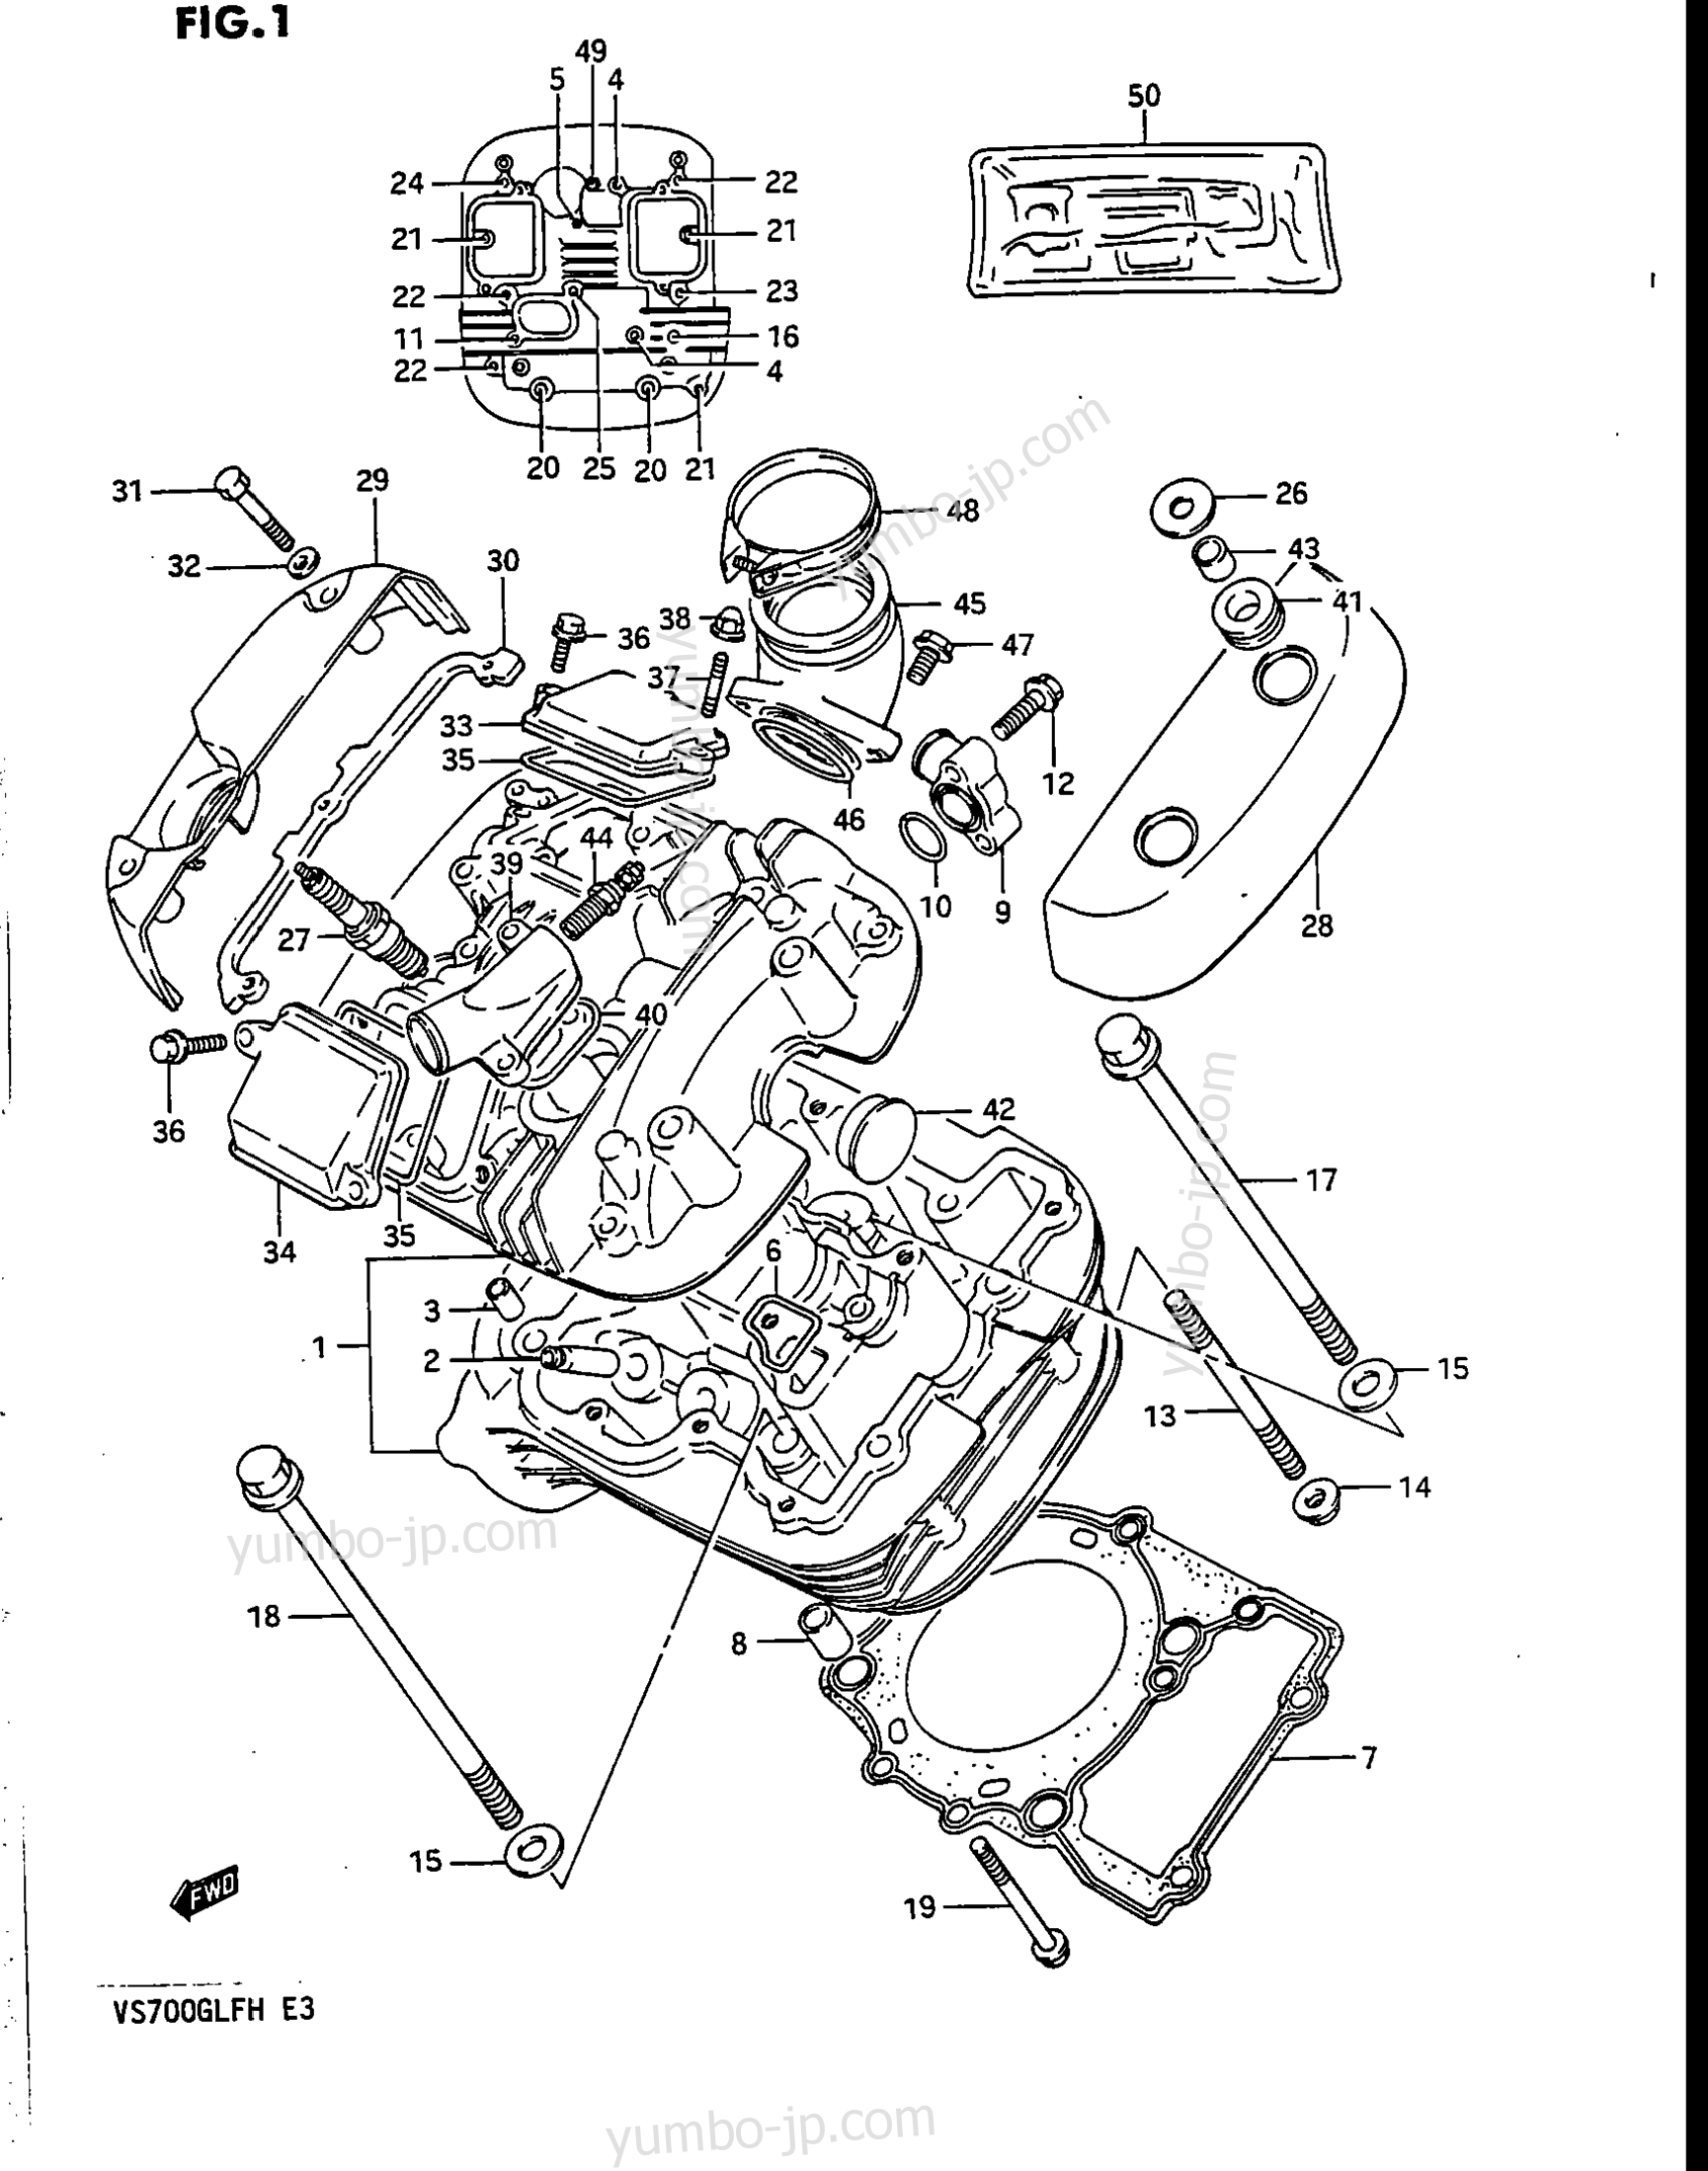 CYLINDER HEAD (FRONT) for motorcycles SUZUKI Intruder (VS700GLF) 1986 year